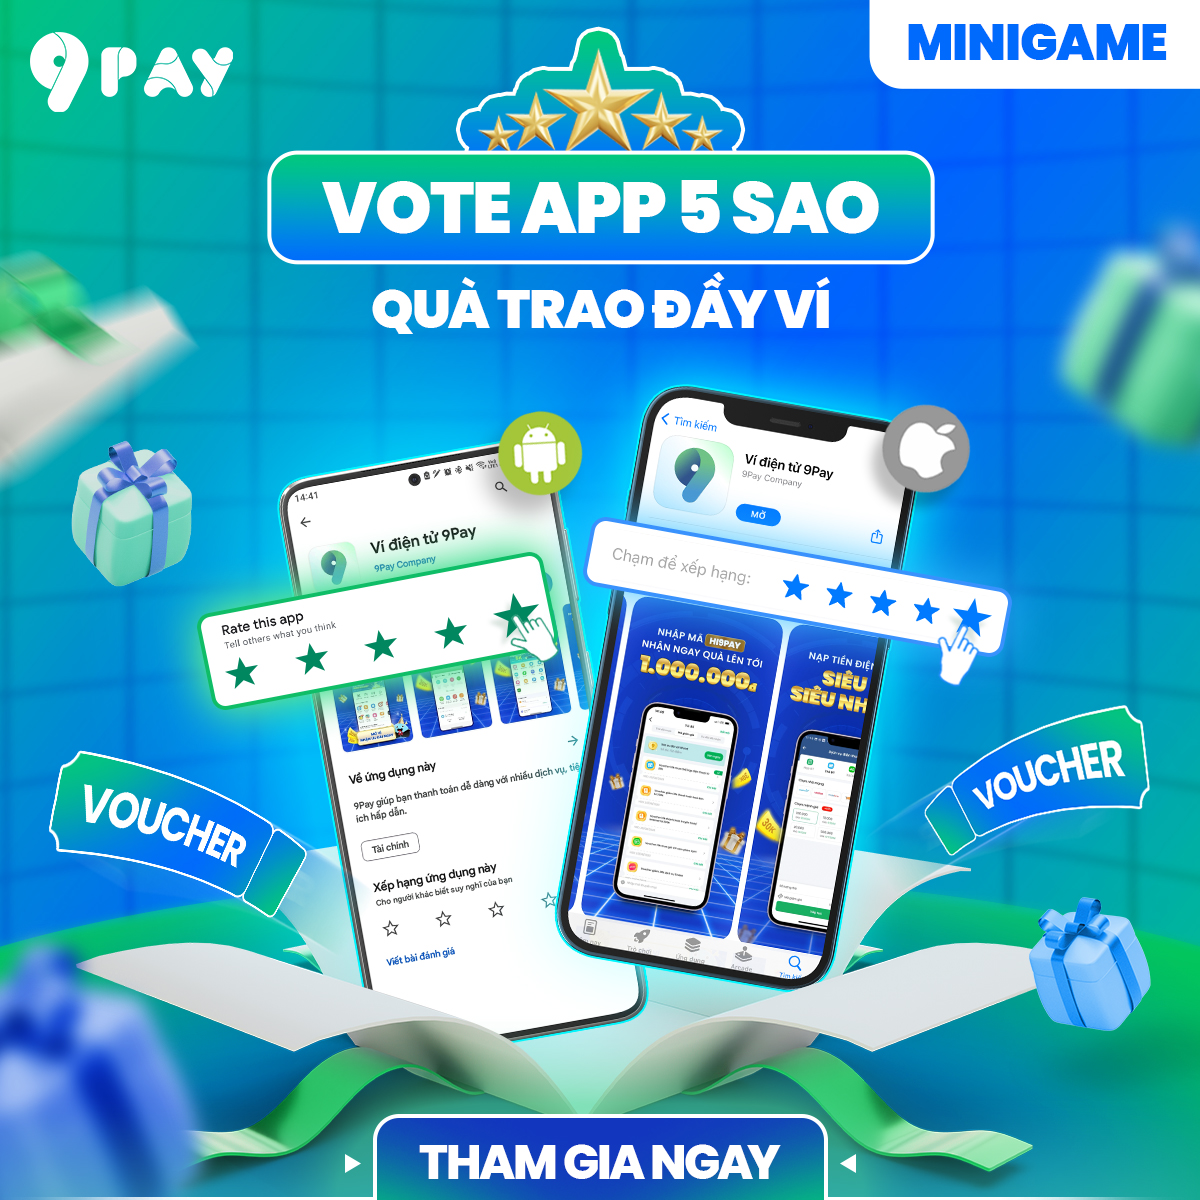 minigame-vote-app-5-sao-qua-trao-day-vi